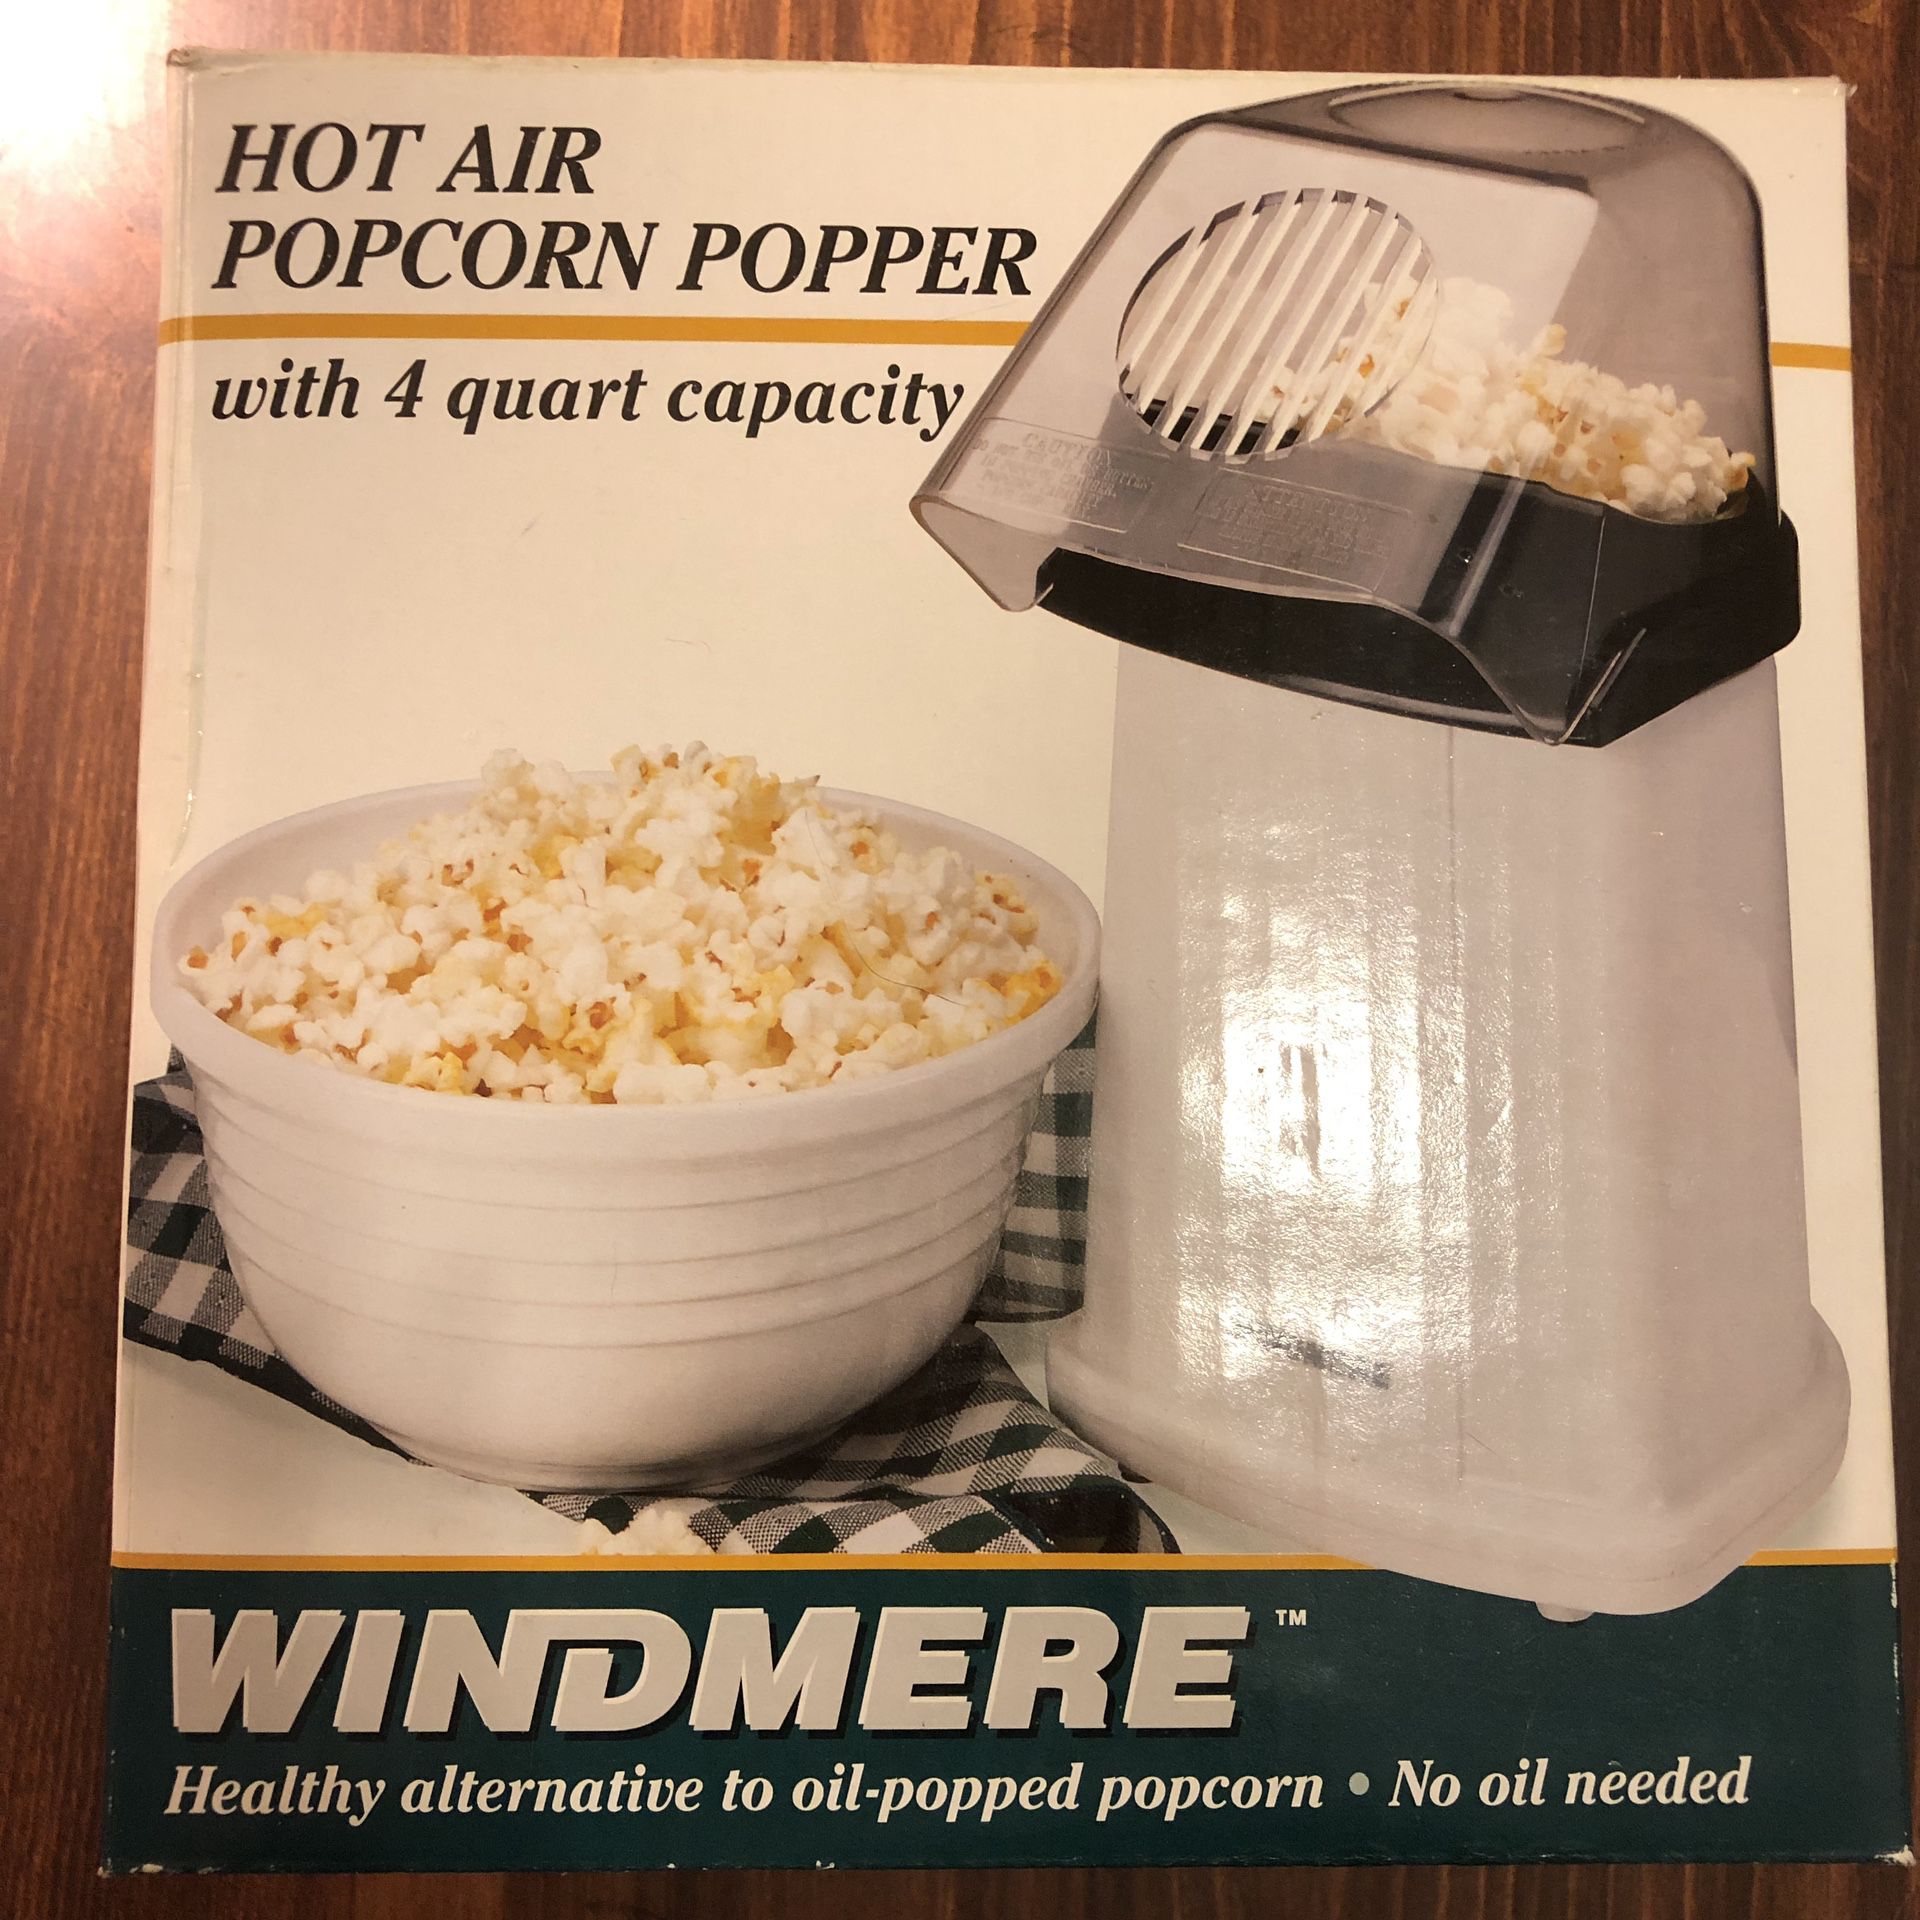 Windmere popcorn popper Hot Air kitchen appliances snacks